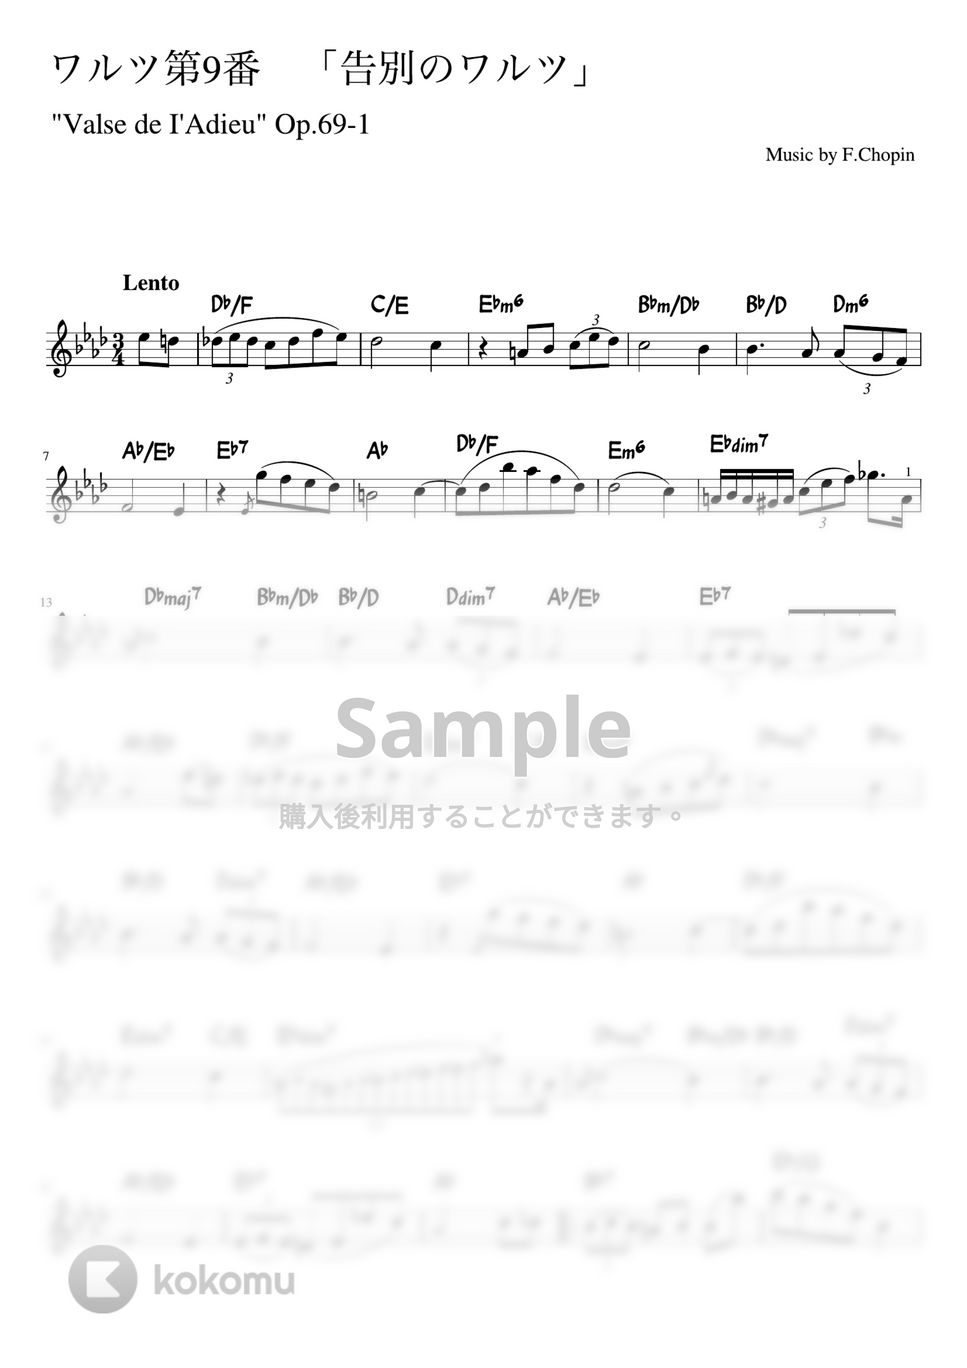 ショパン - 告別のワルツ (Fm・メロディーコード) by pfkaori